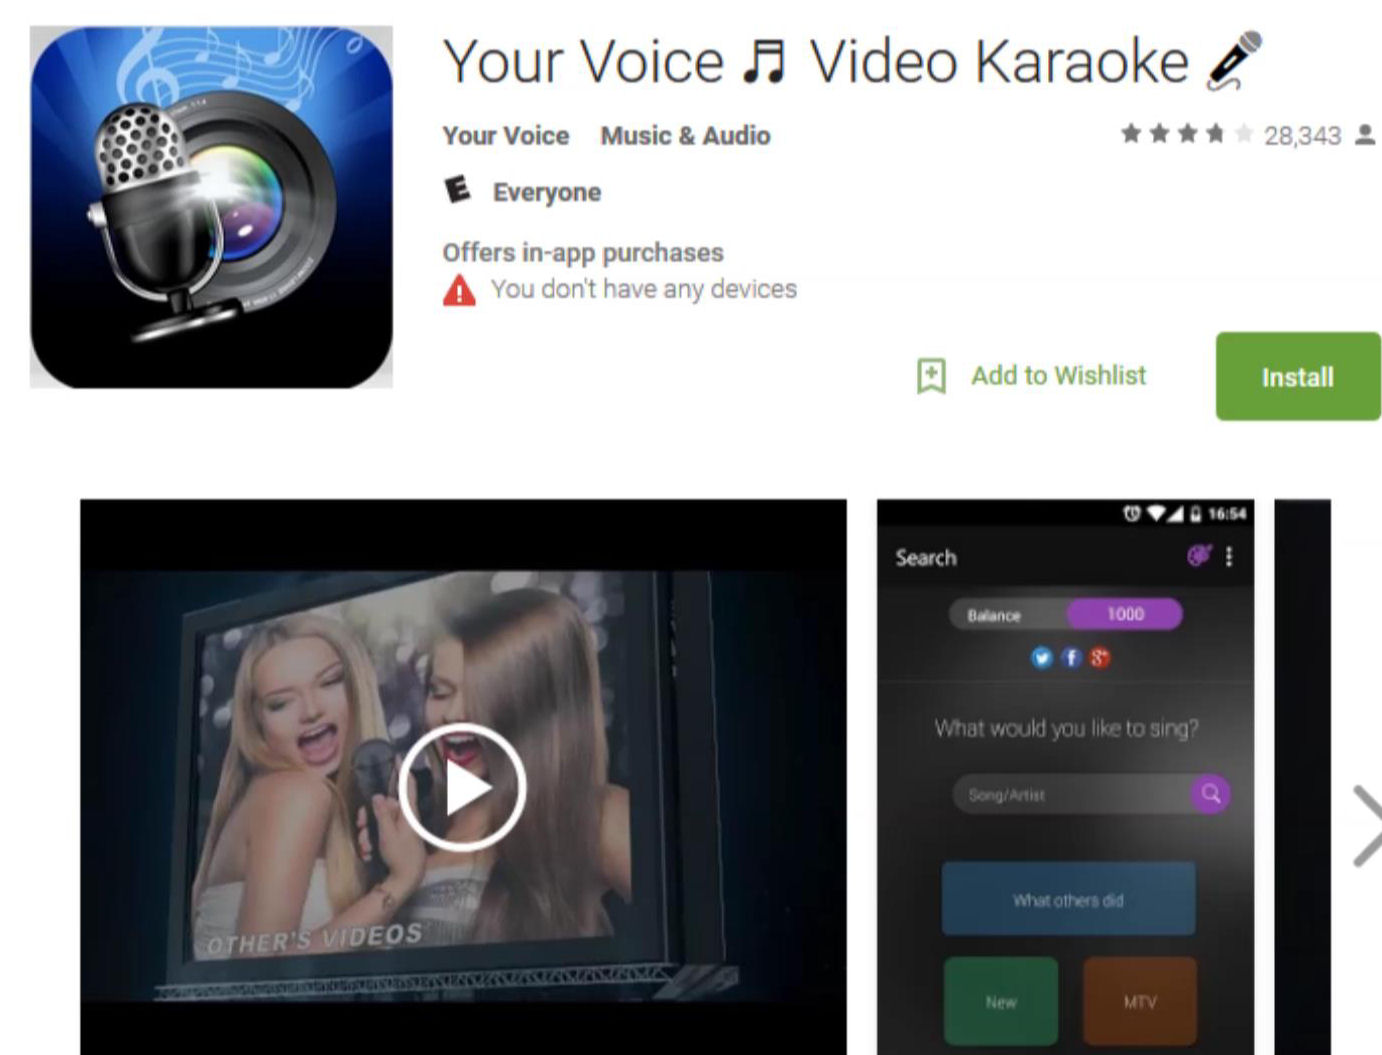  Your Voice App